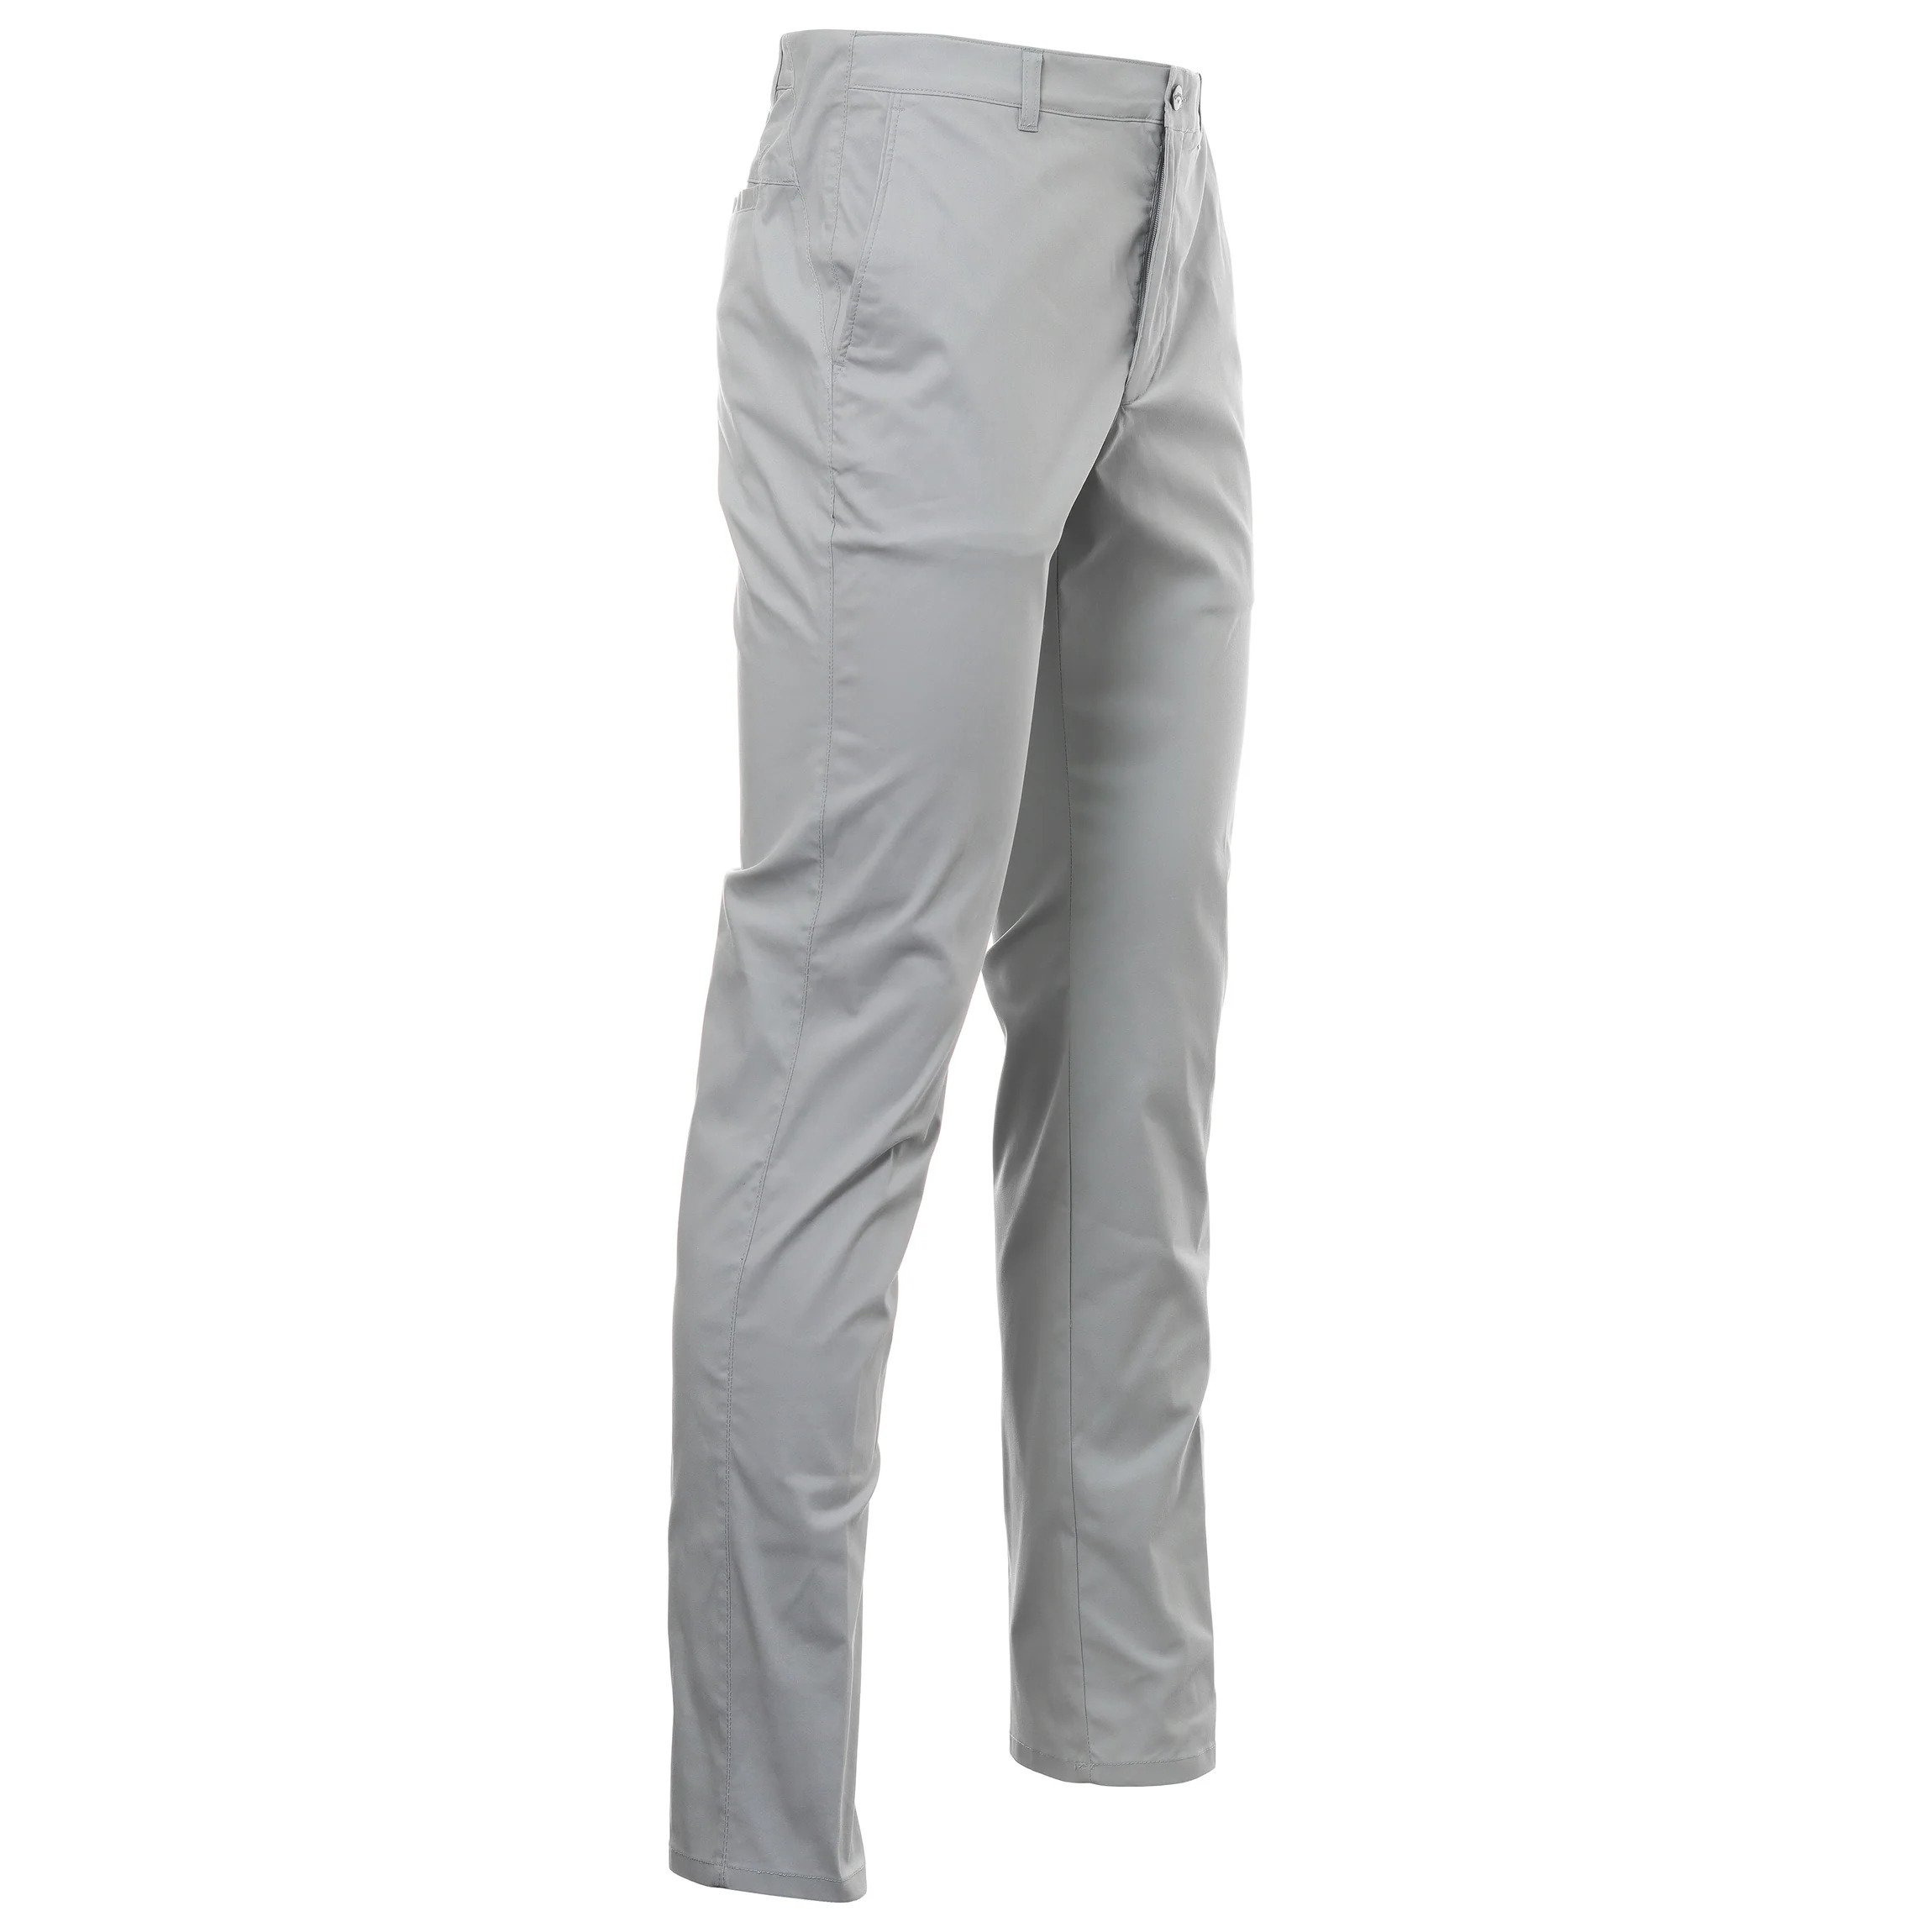 Callaway Flat Fronted pánské golfové kalhoty, světle šedé, vel. 34/32